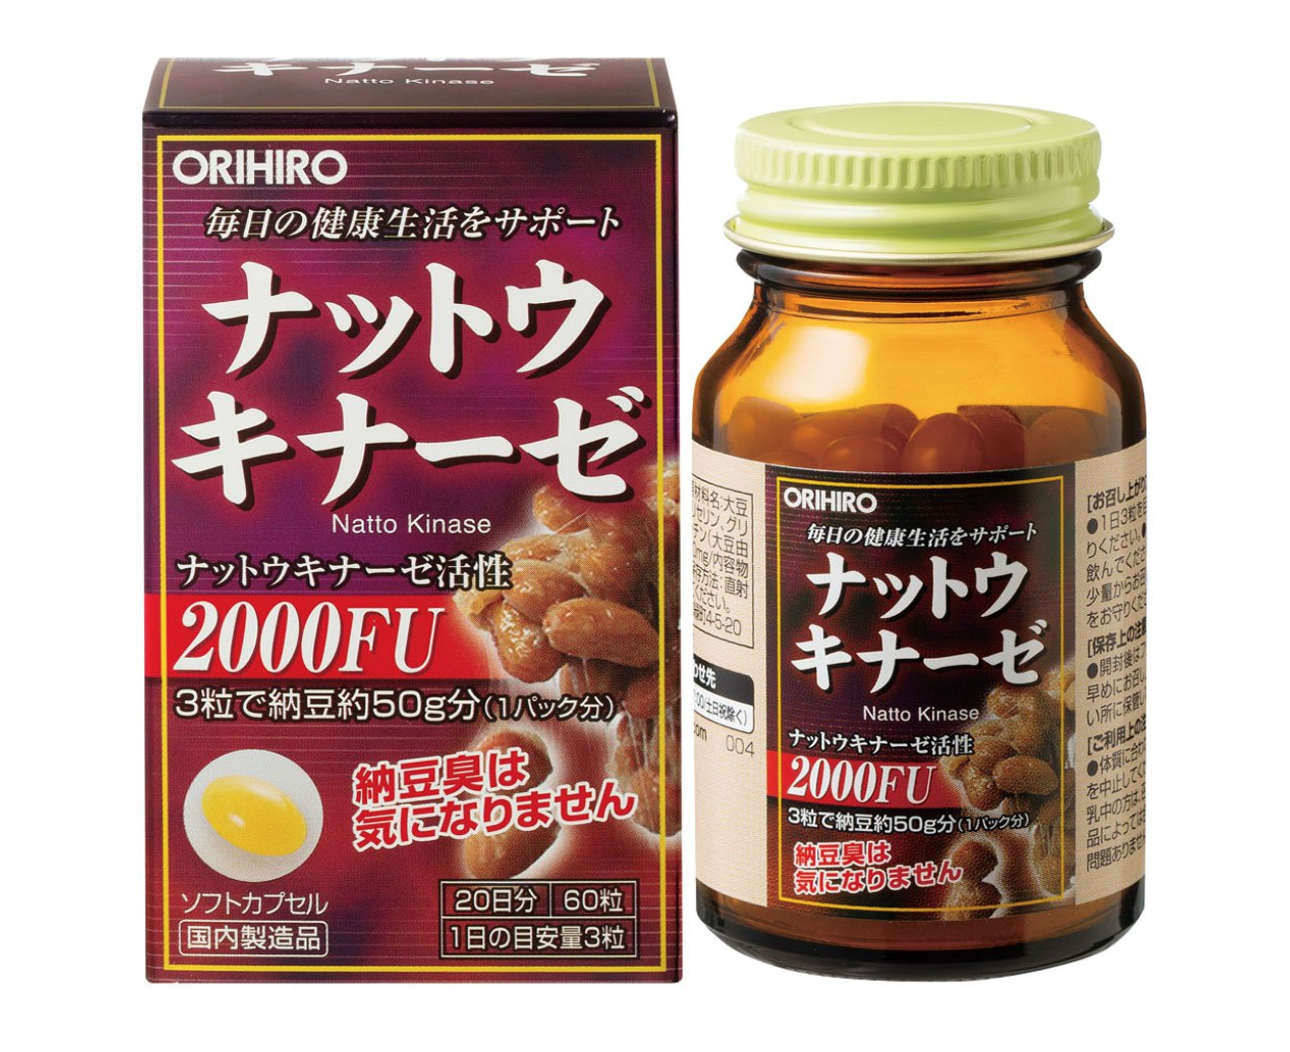 Viên uống chống đột quỵ Nattokinaze của Orihiro